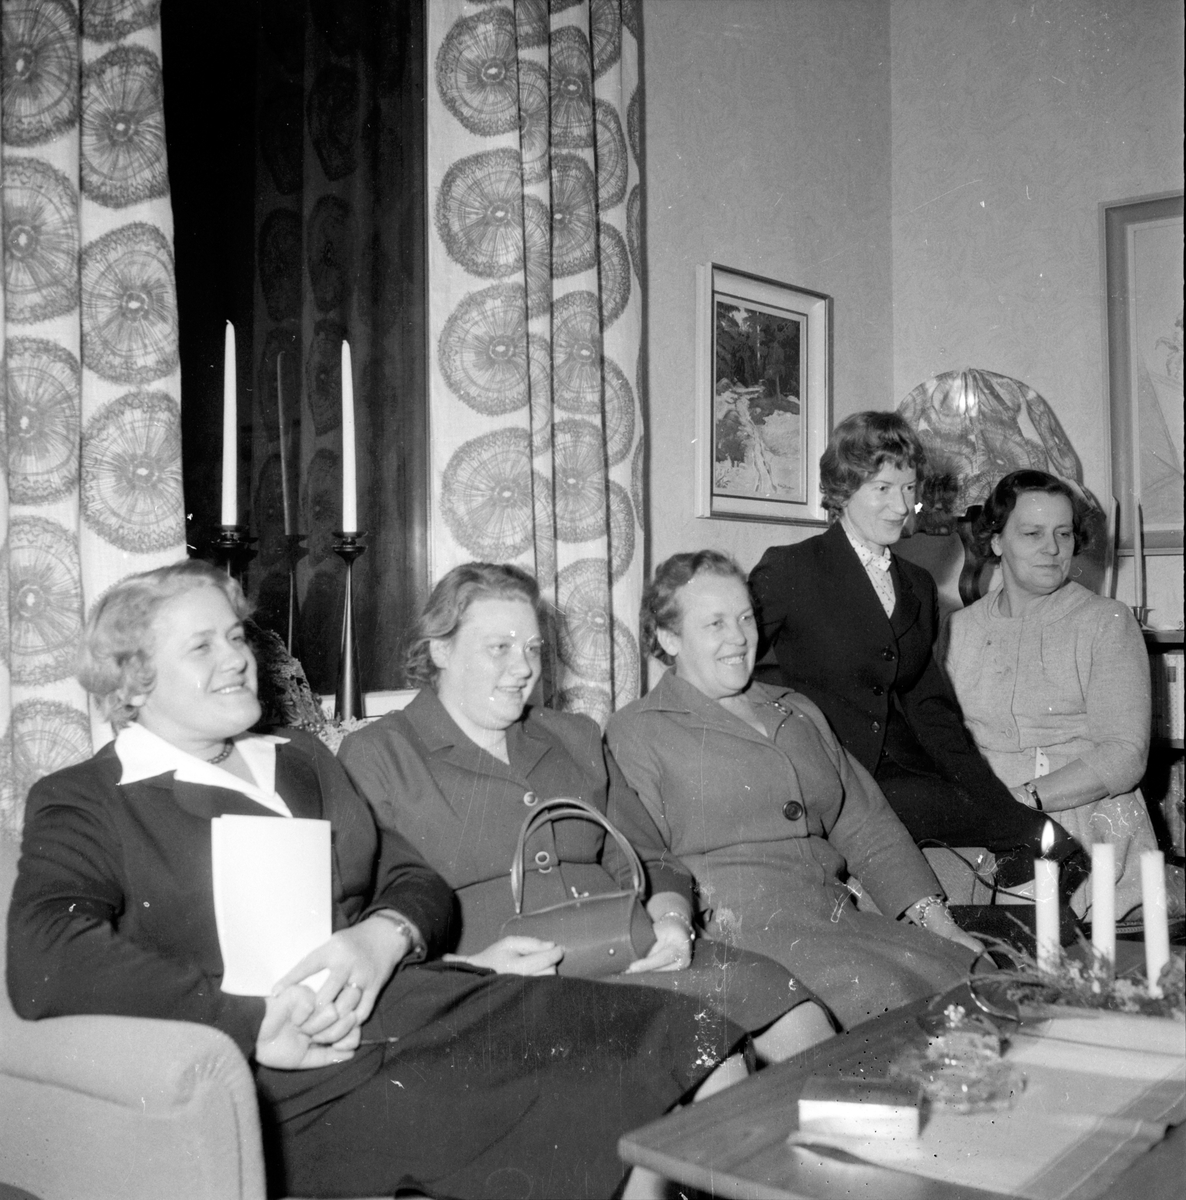 TBV-Cirkel i Hembygdskunskap,
2 December 1958